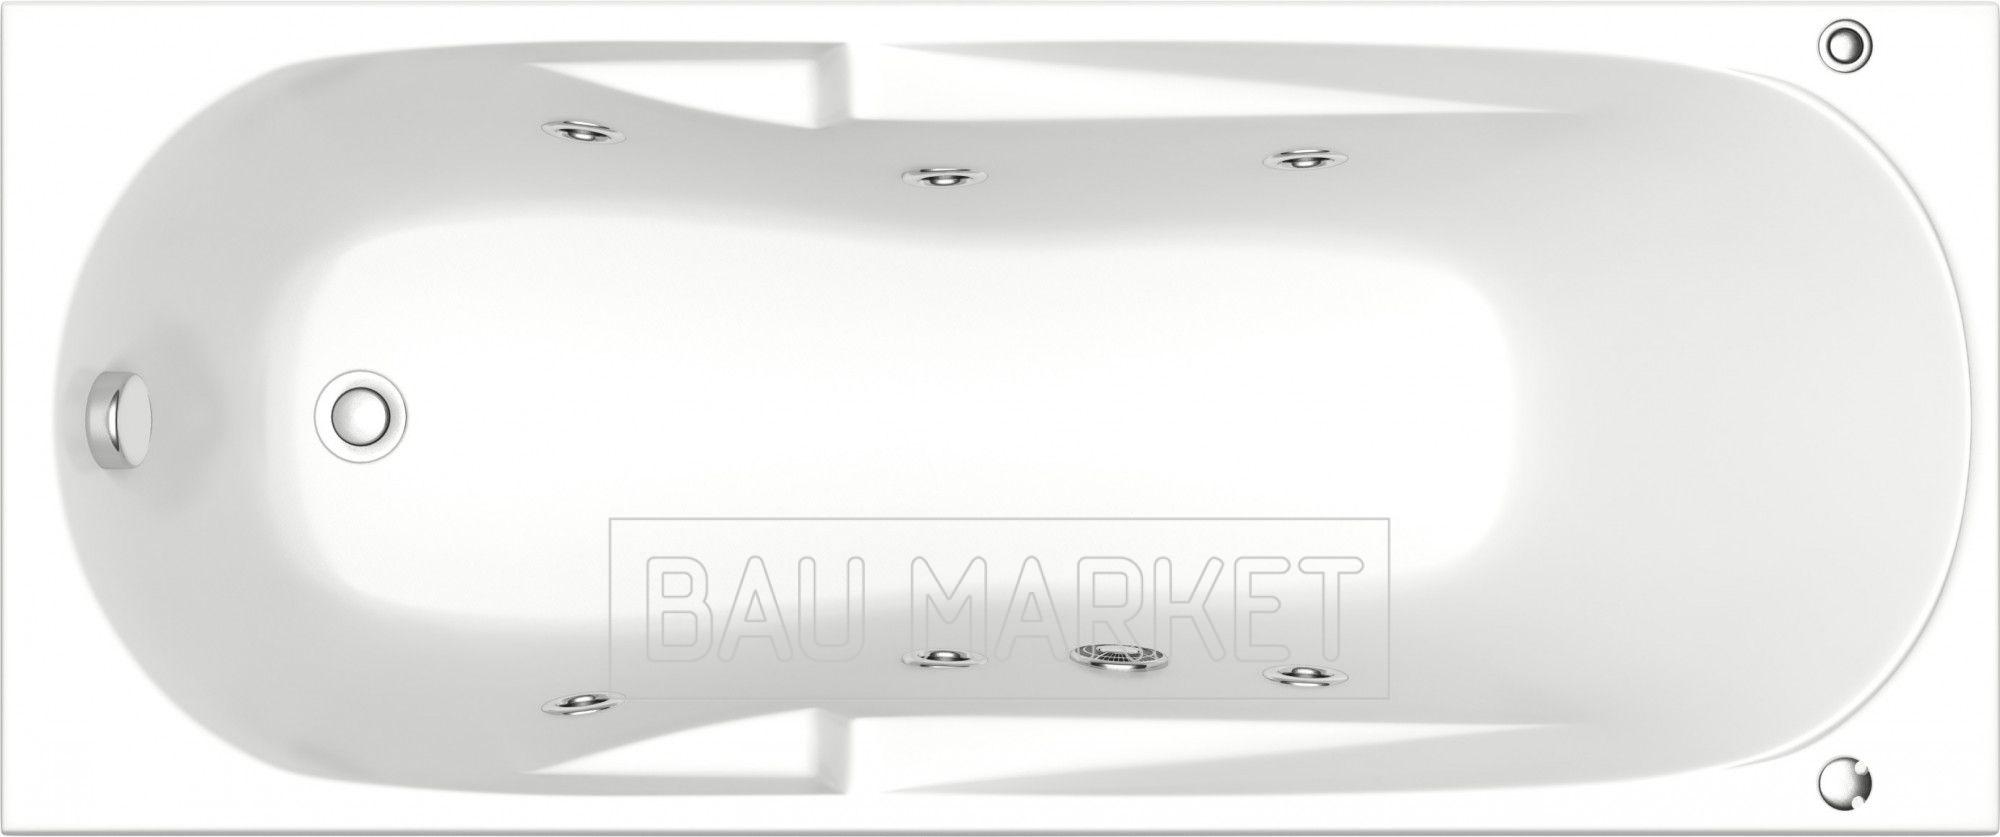 Ванна гидромассажная BAS Мальдива 160х70 см с Г/М оборудованием серия FLAT 